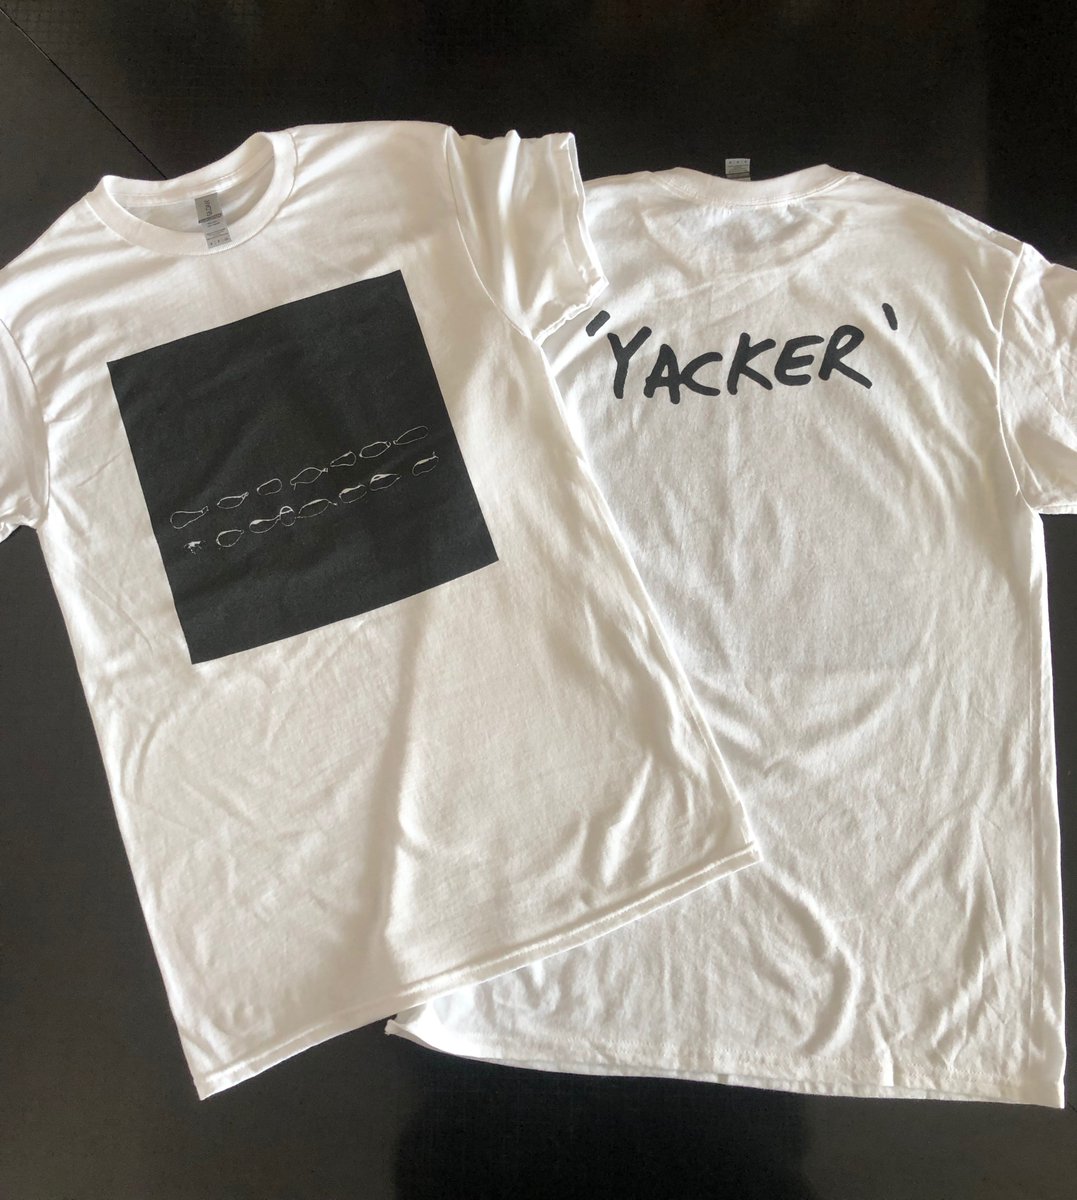 'Yacker' shirts are here gentledefect.bandcamp.com/album/yacker